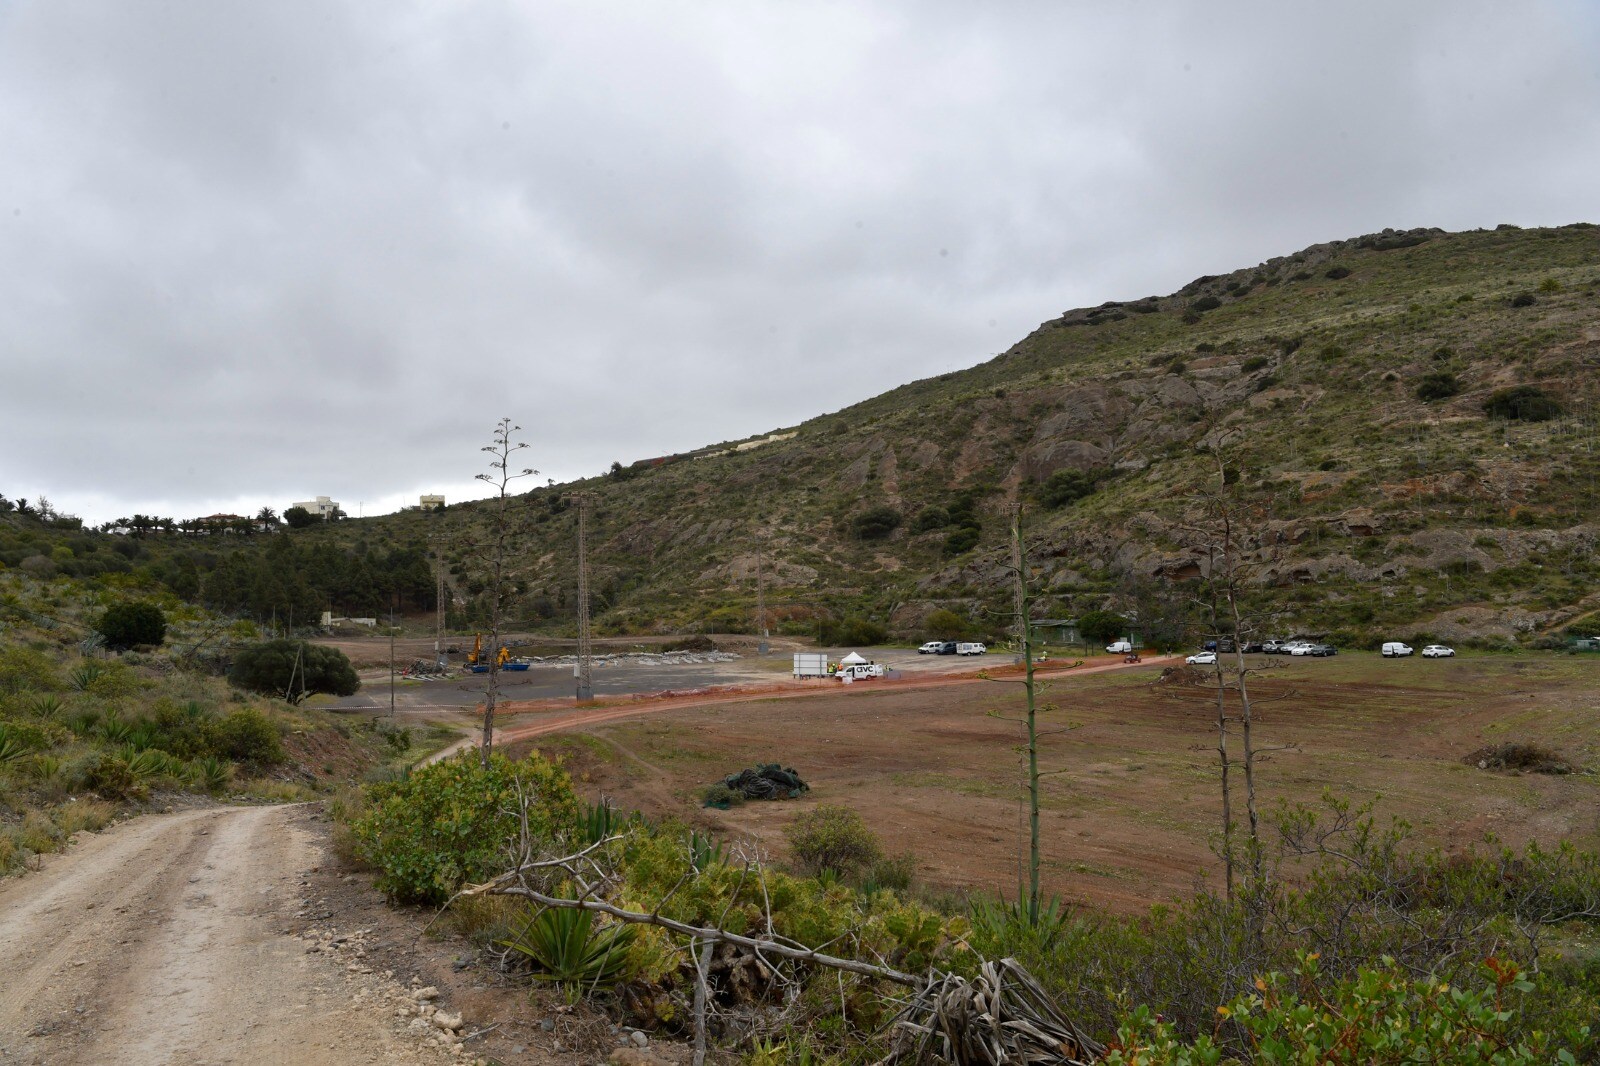 Arranca el Parque Deportivo de San Lorenzo tras 12 años de lucha vecinal